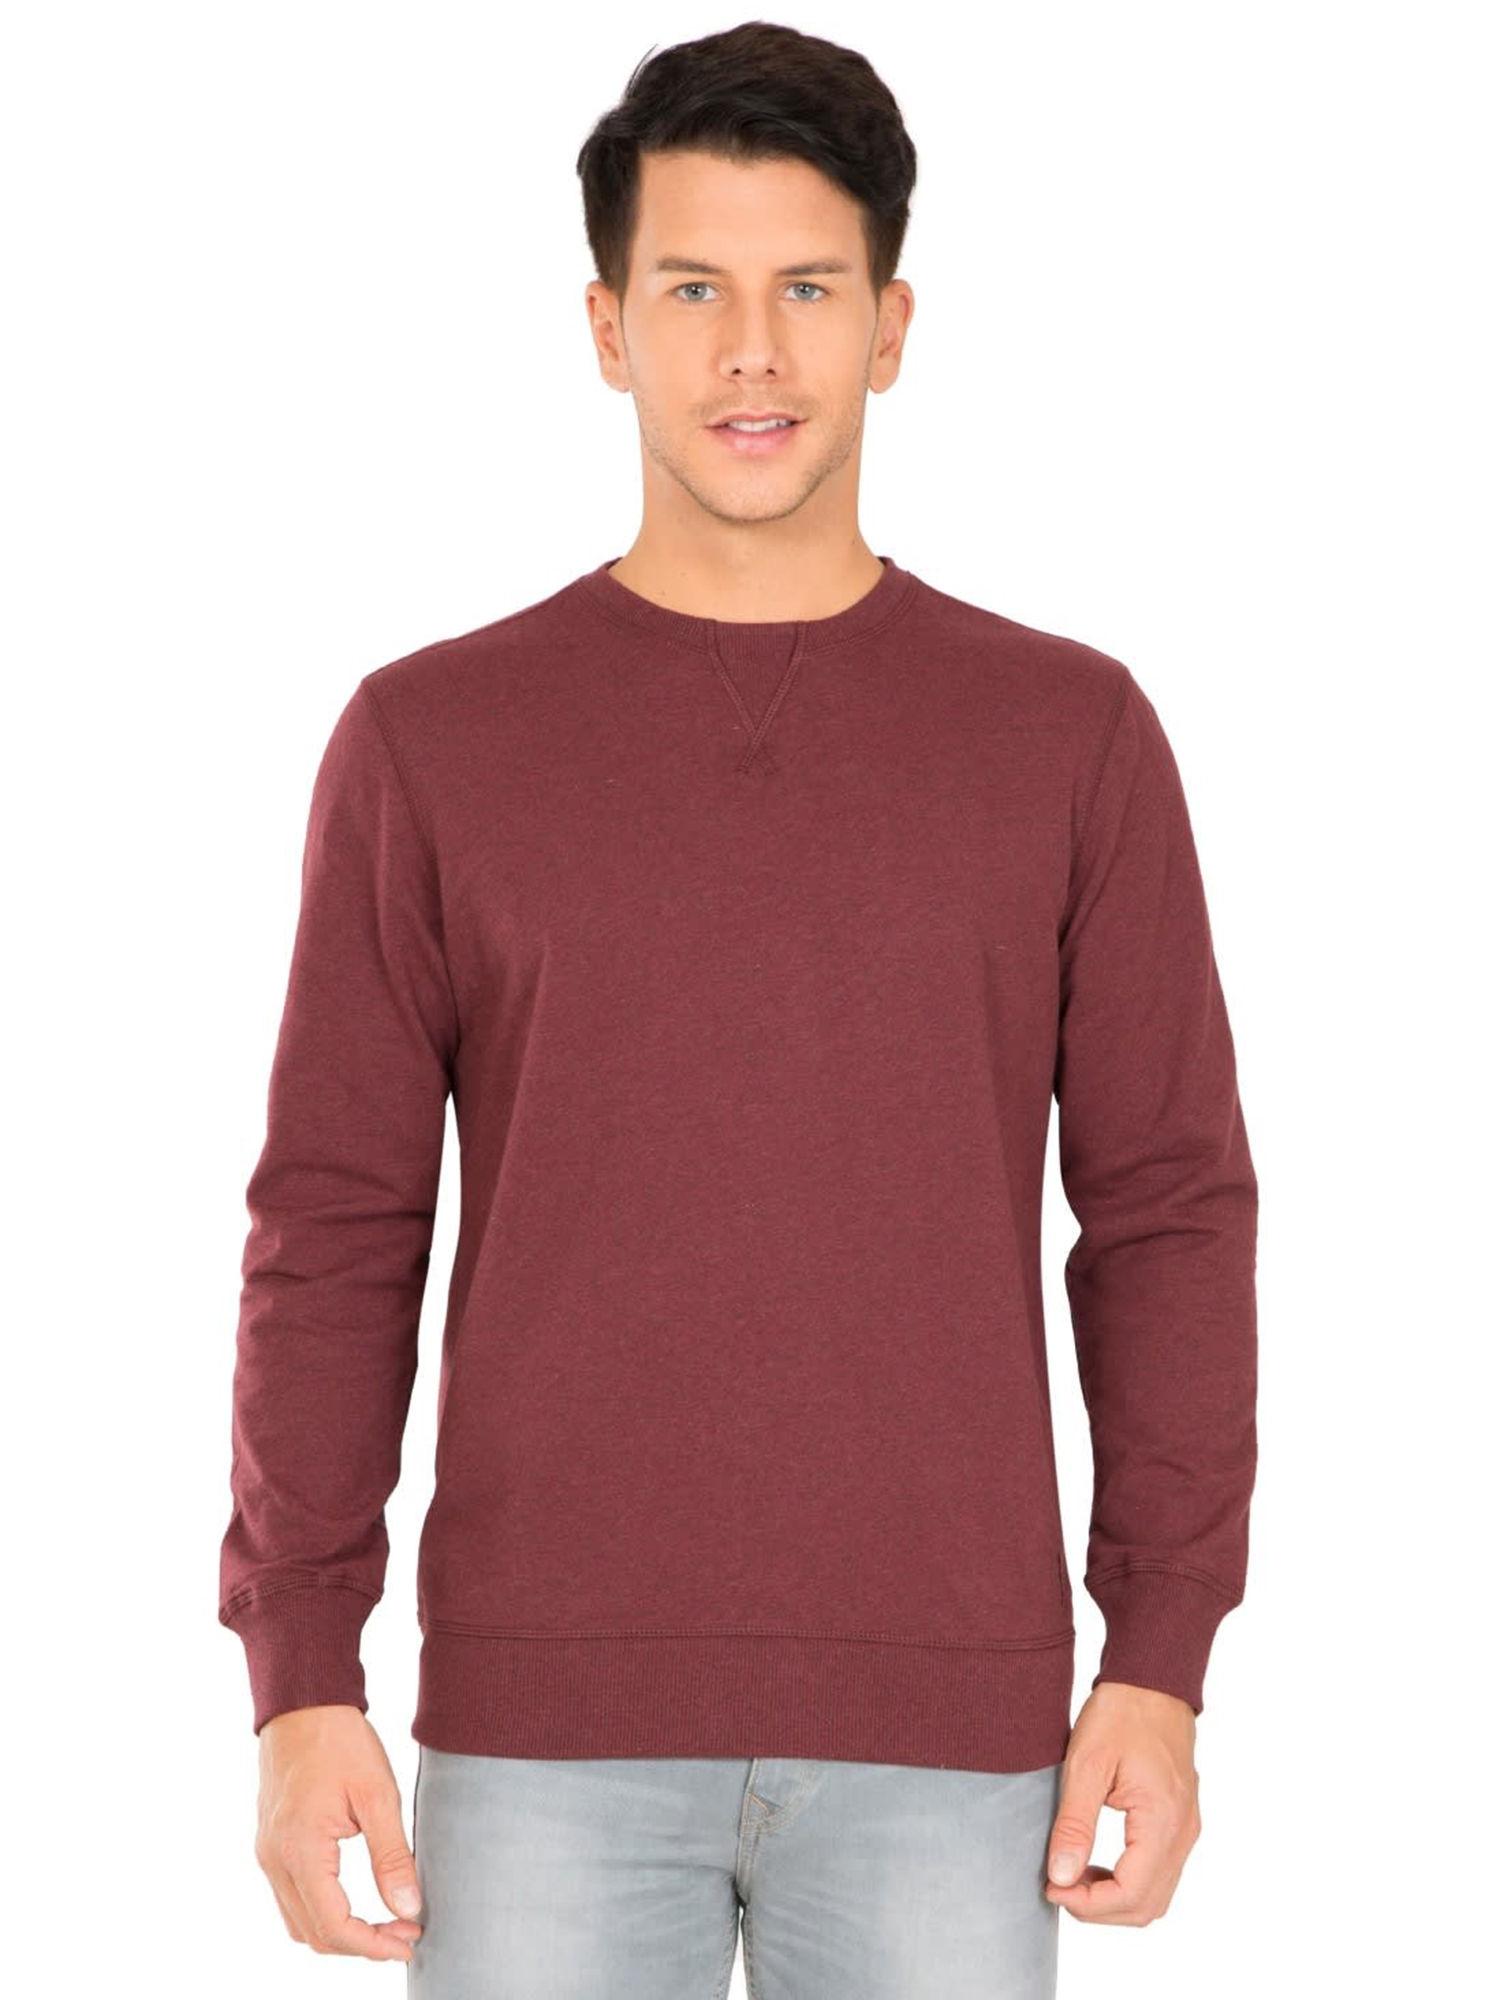 burgundy-melange-solid-sweatshirt